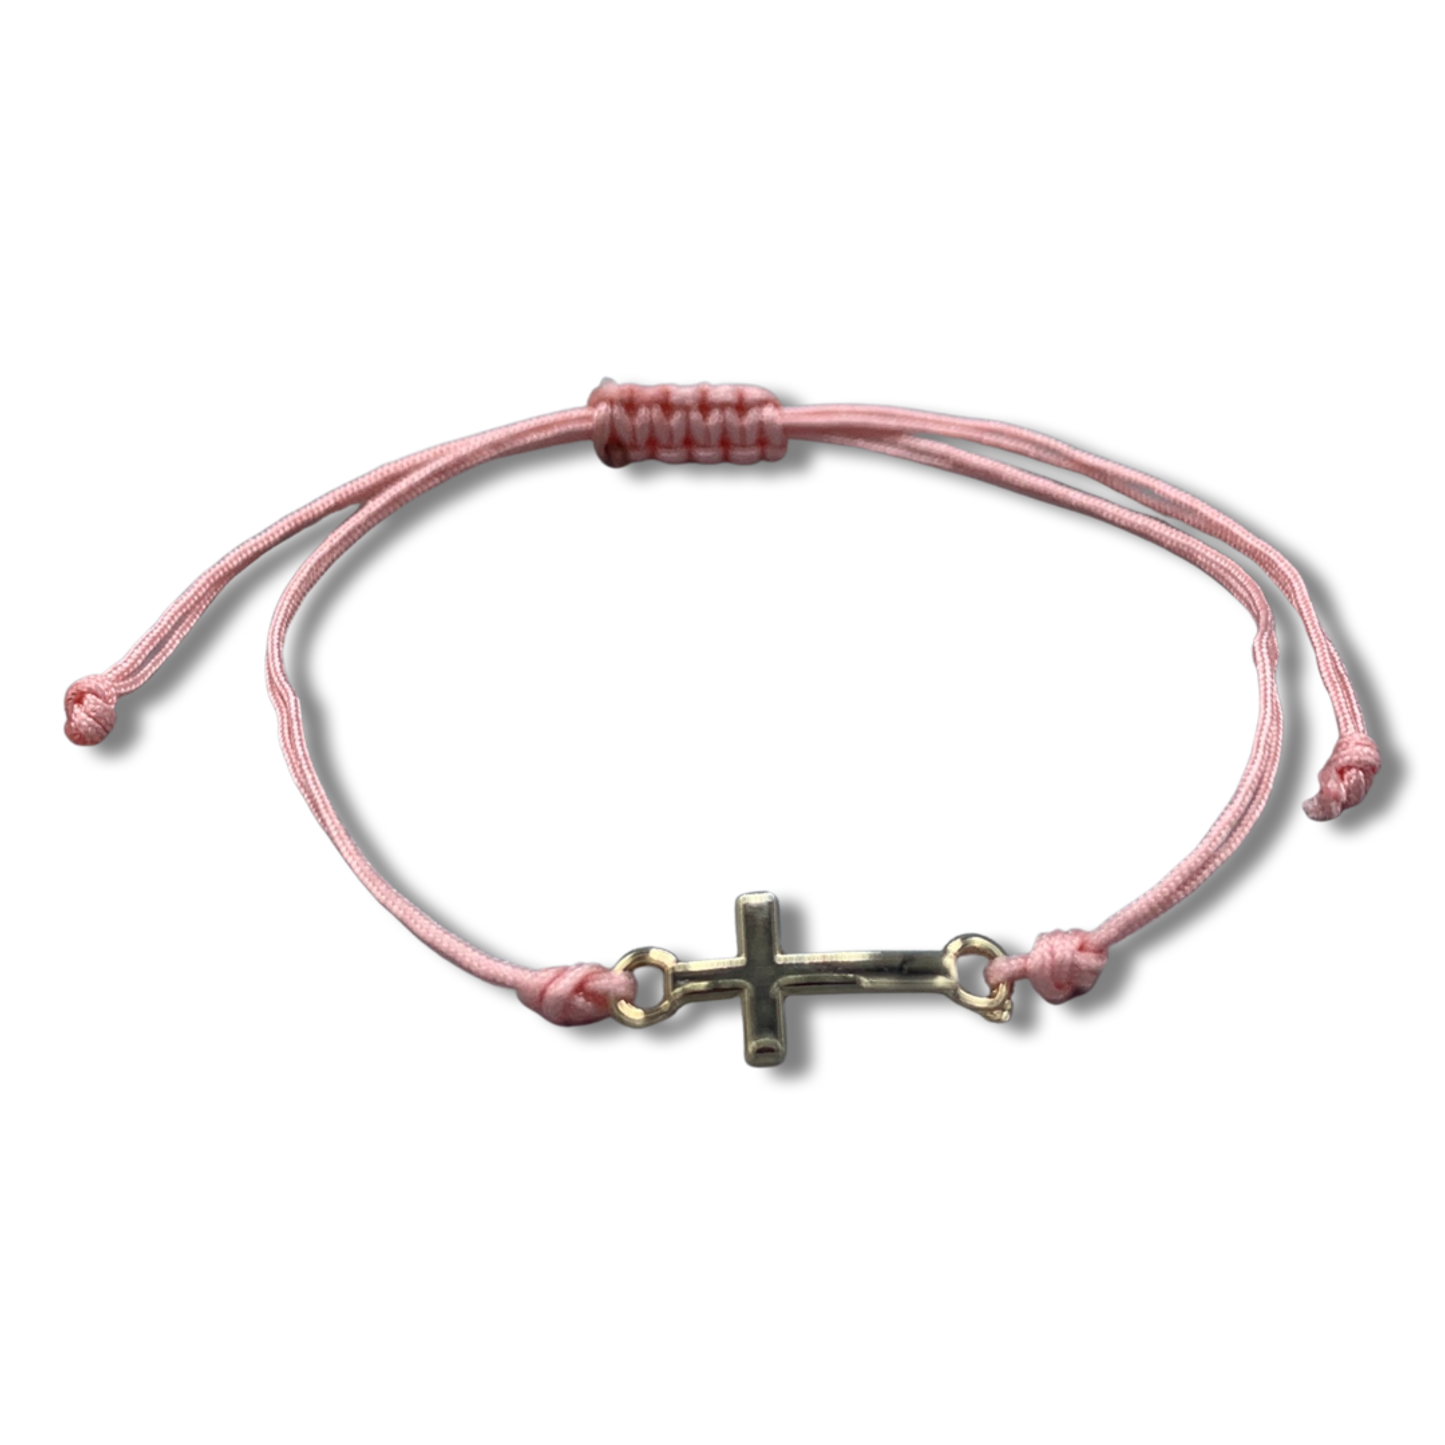 Metal Cross Bracelet of Assorted Colors